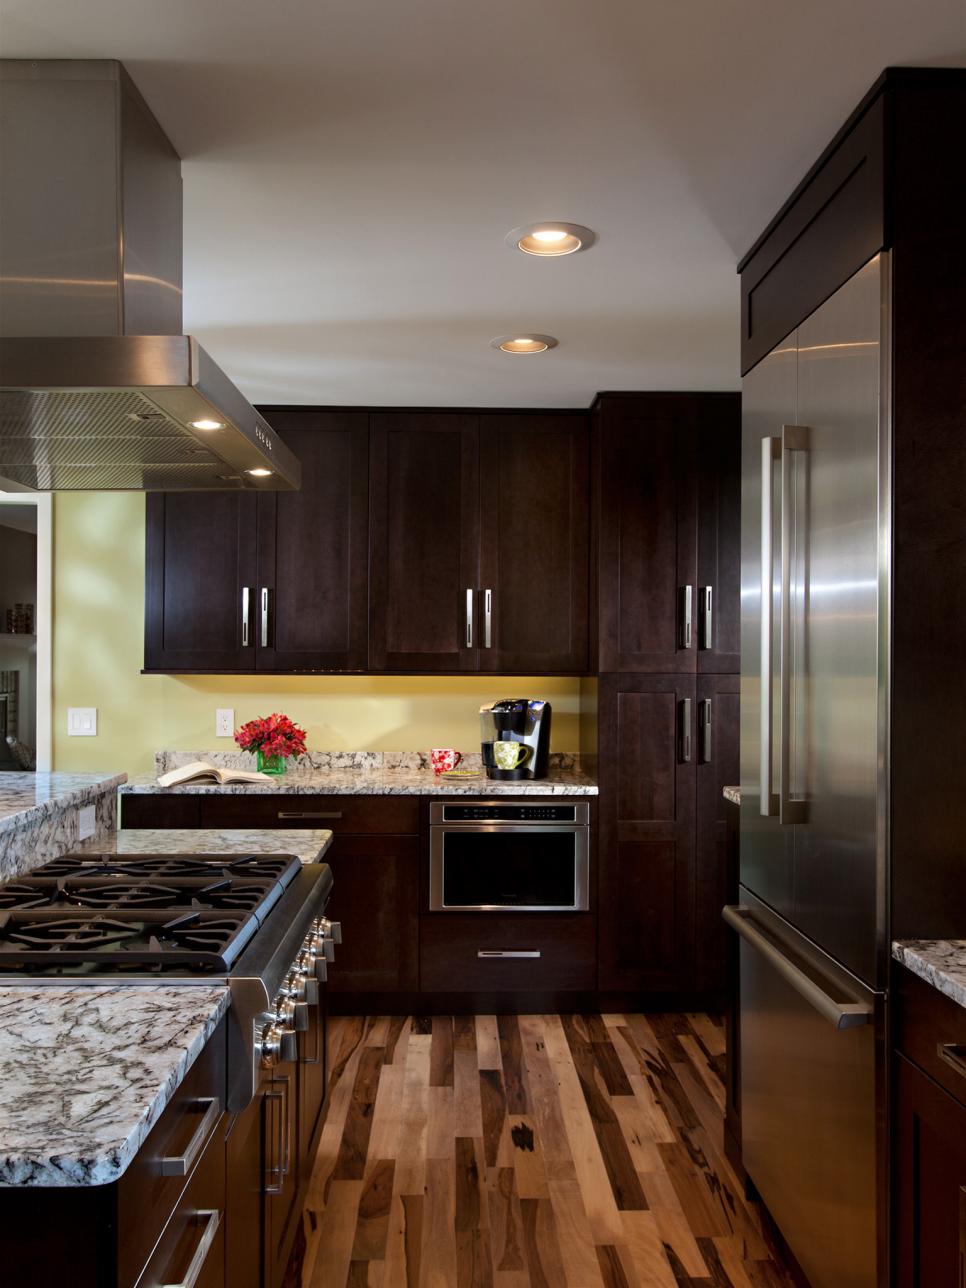 Beautiful Hardwood Floors in Transitional Kitchen | HGTV